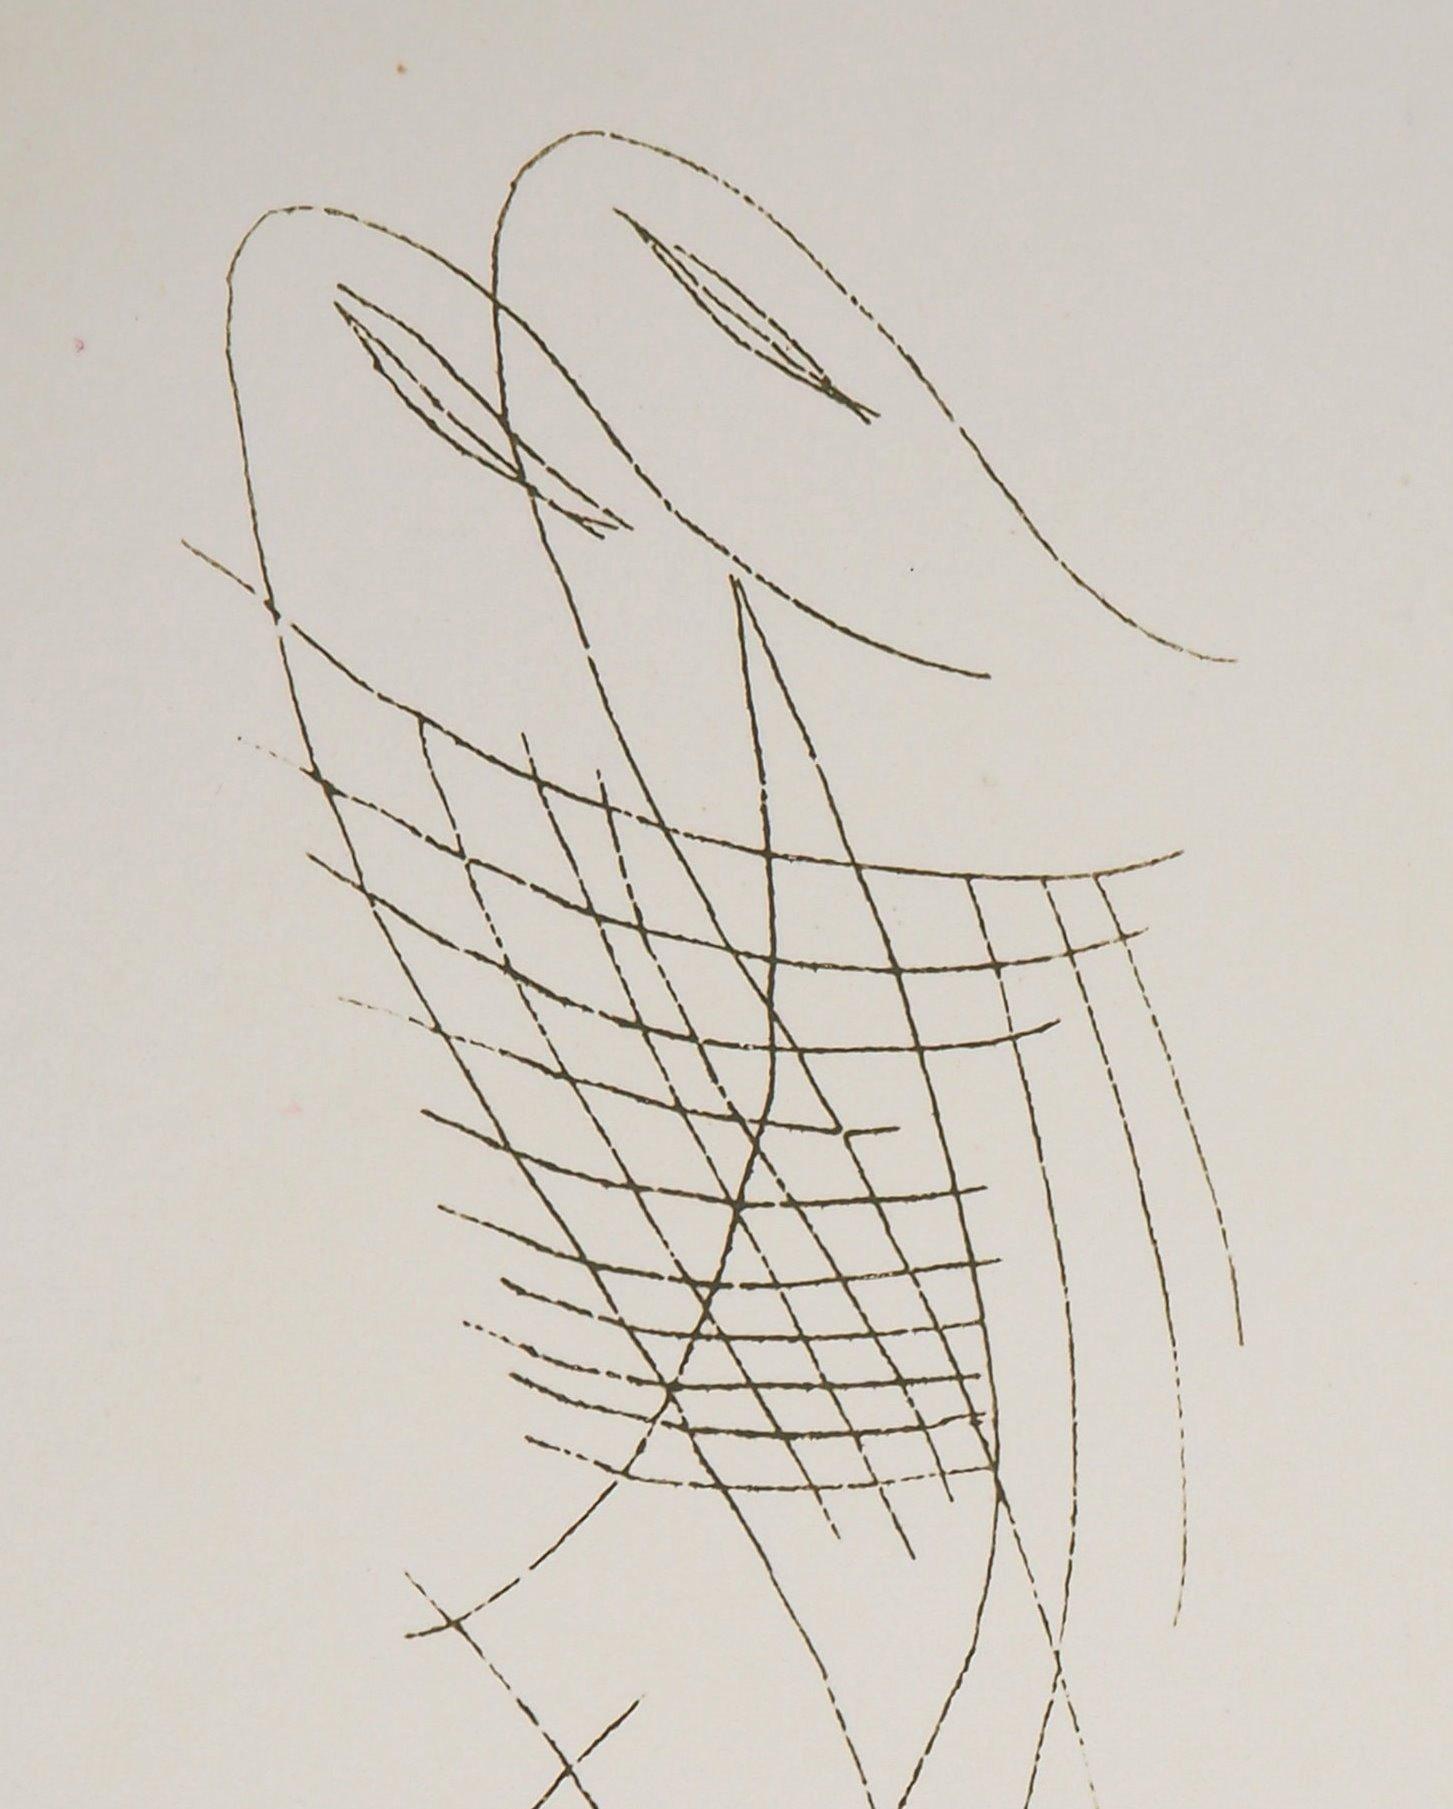 Man Ray (Emmanuel Radnitsky, alias)
Oneirisches Paar, Lydie, 1969

Handsignierte Original-Radierung 
Auch gedruckte Unterschrift in der Platte
Auf Pergament, 23 x 17 cm (ca. 9 x 6,6 inch)
Nummeriert /50 Exemplare

INFORMATIONEN :  Diese Radierung